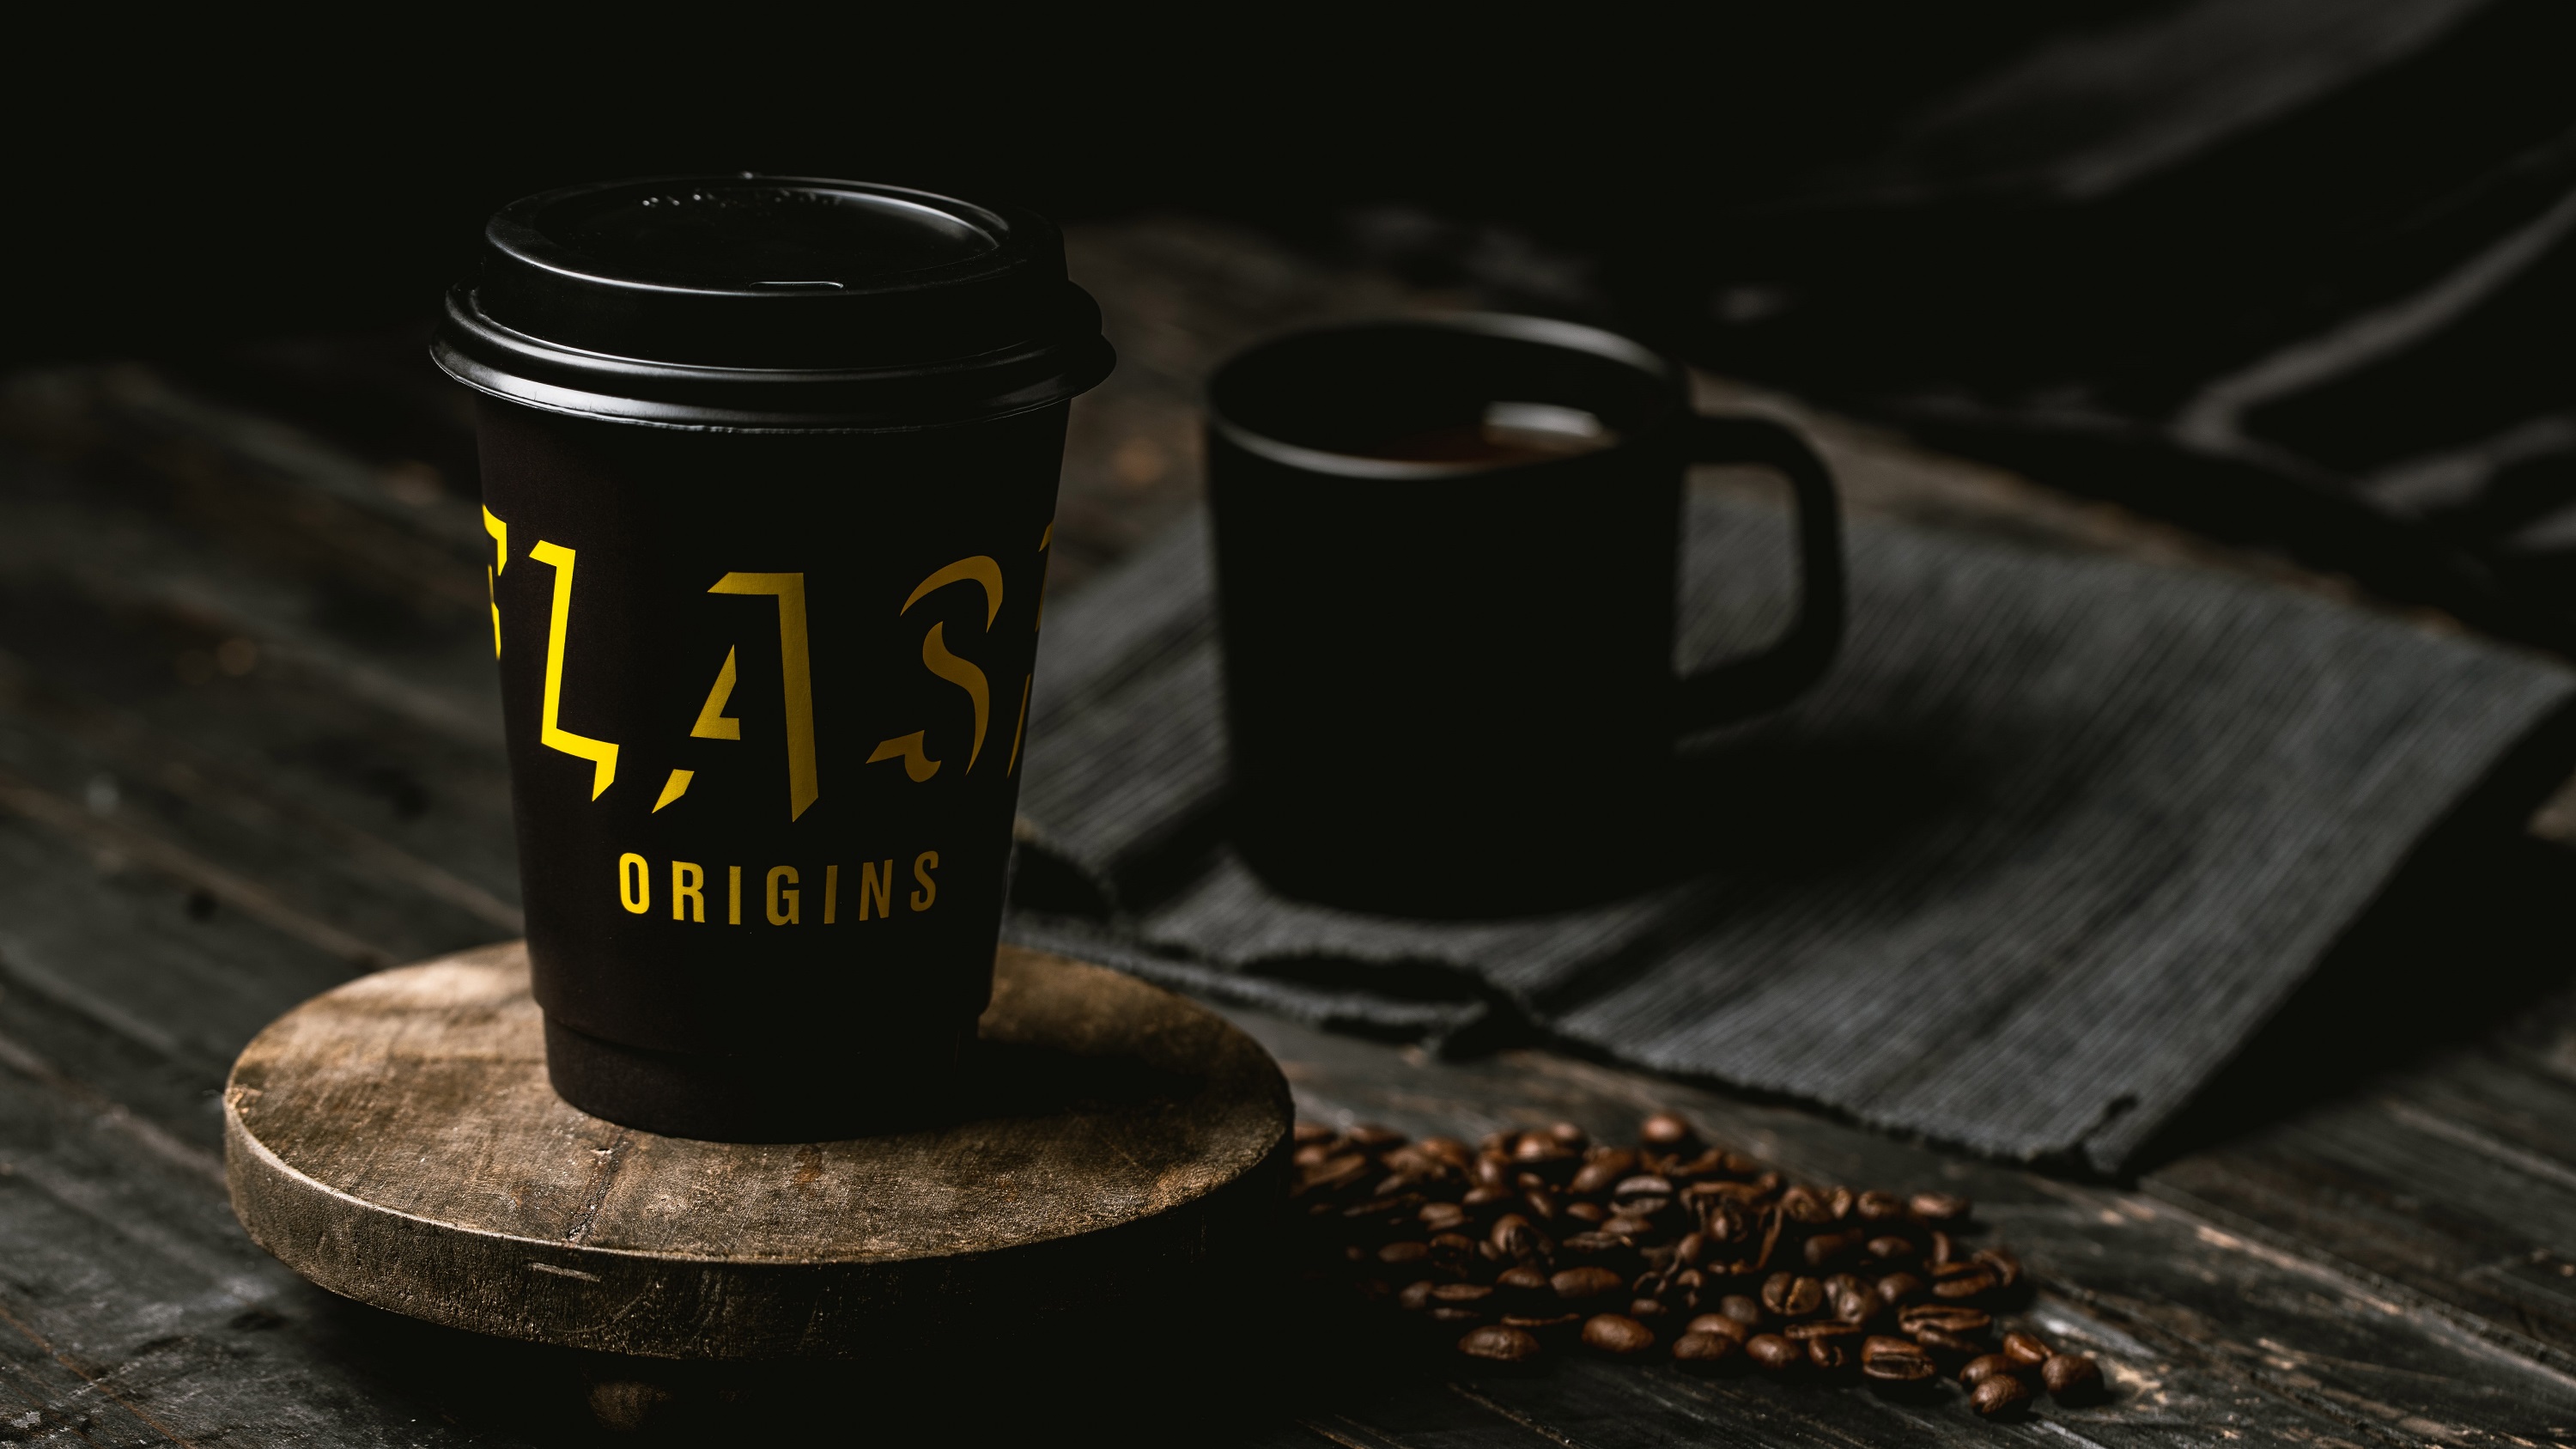 【美食】Flash Coffee推出黑咖啡系列